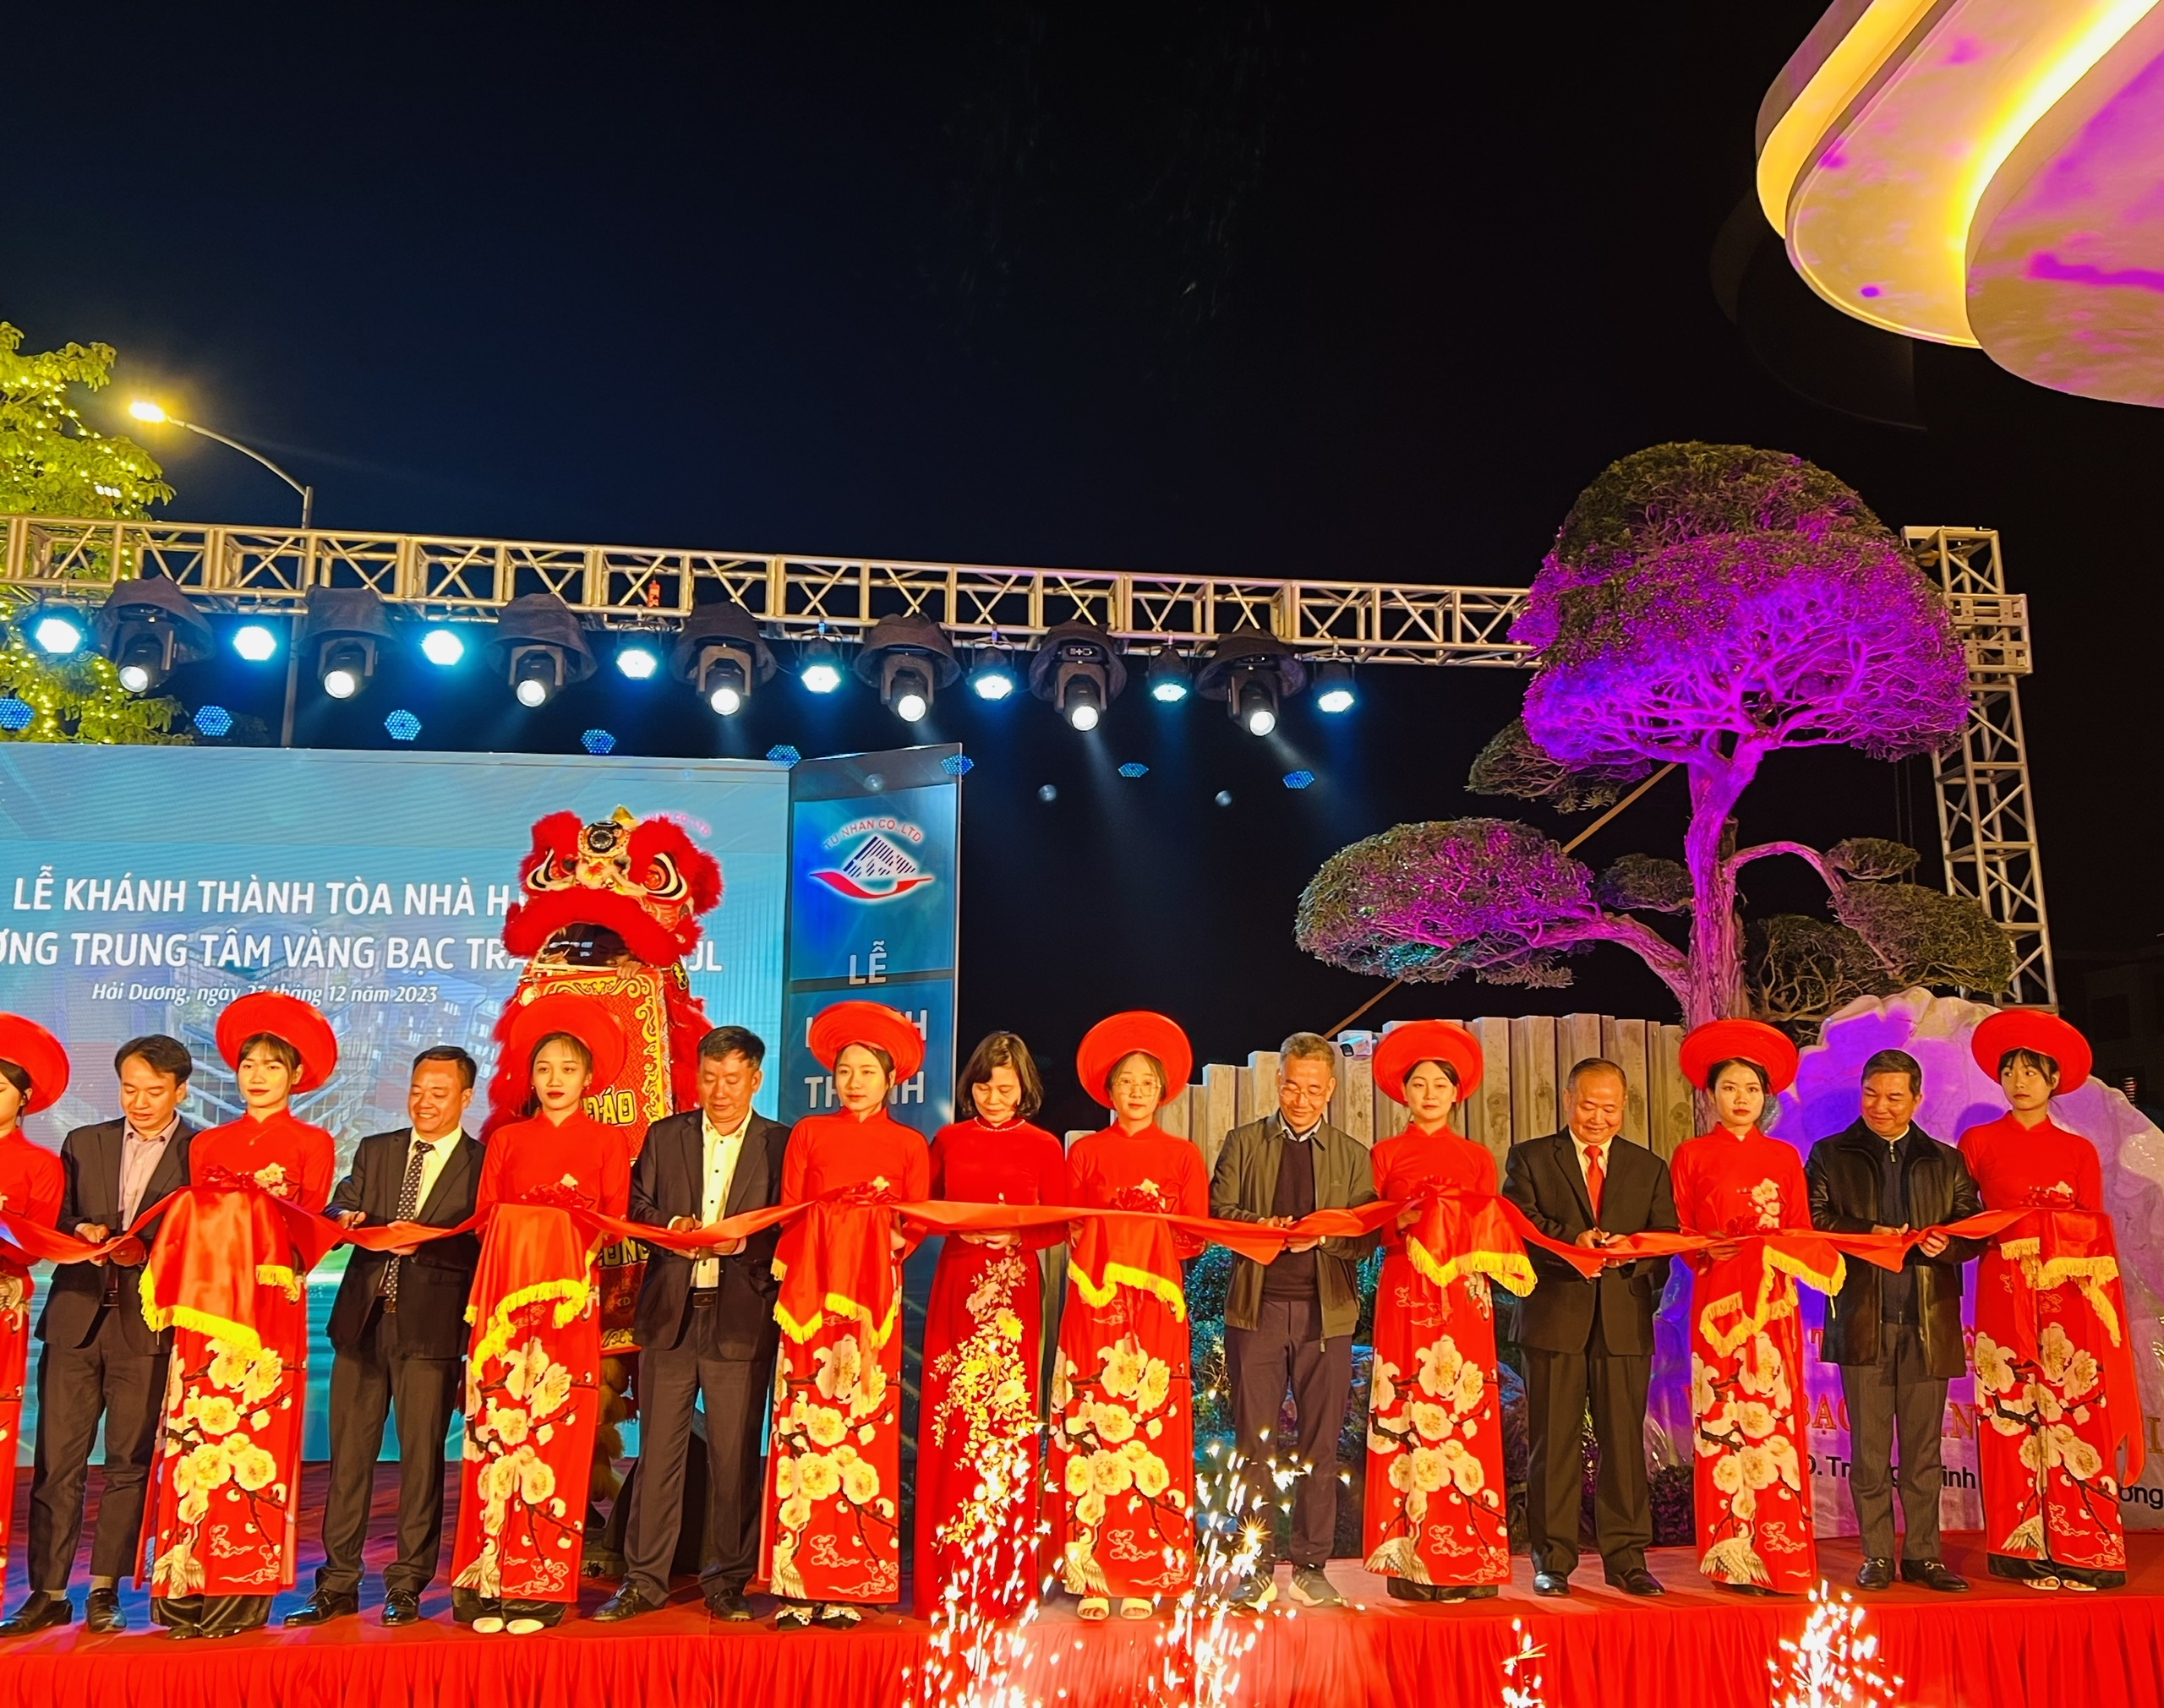 Hội Doanh nghiệp trẻ tỉnh Hải Dương tặng hoa chúc mừng lễ khánh thành tòa nhà HJL và lễ khai trương trung tâm vàng bạc trang sức HJL